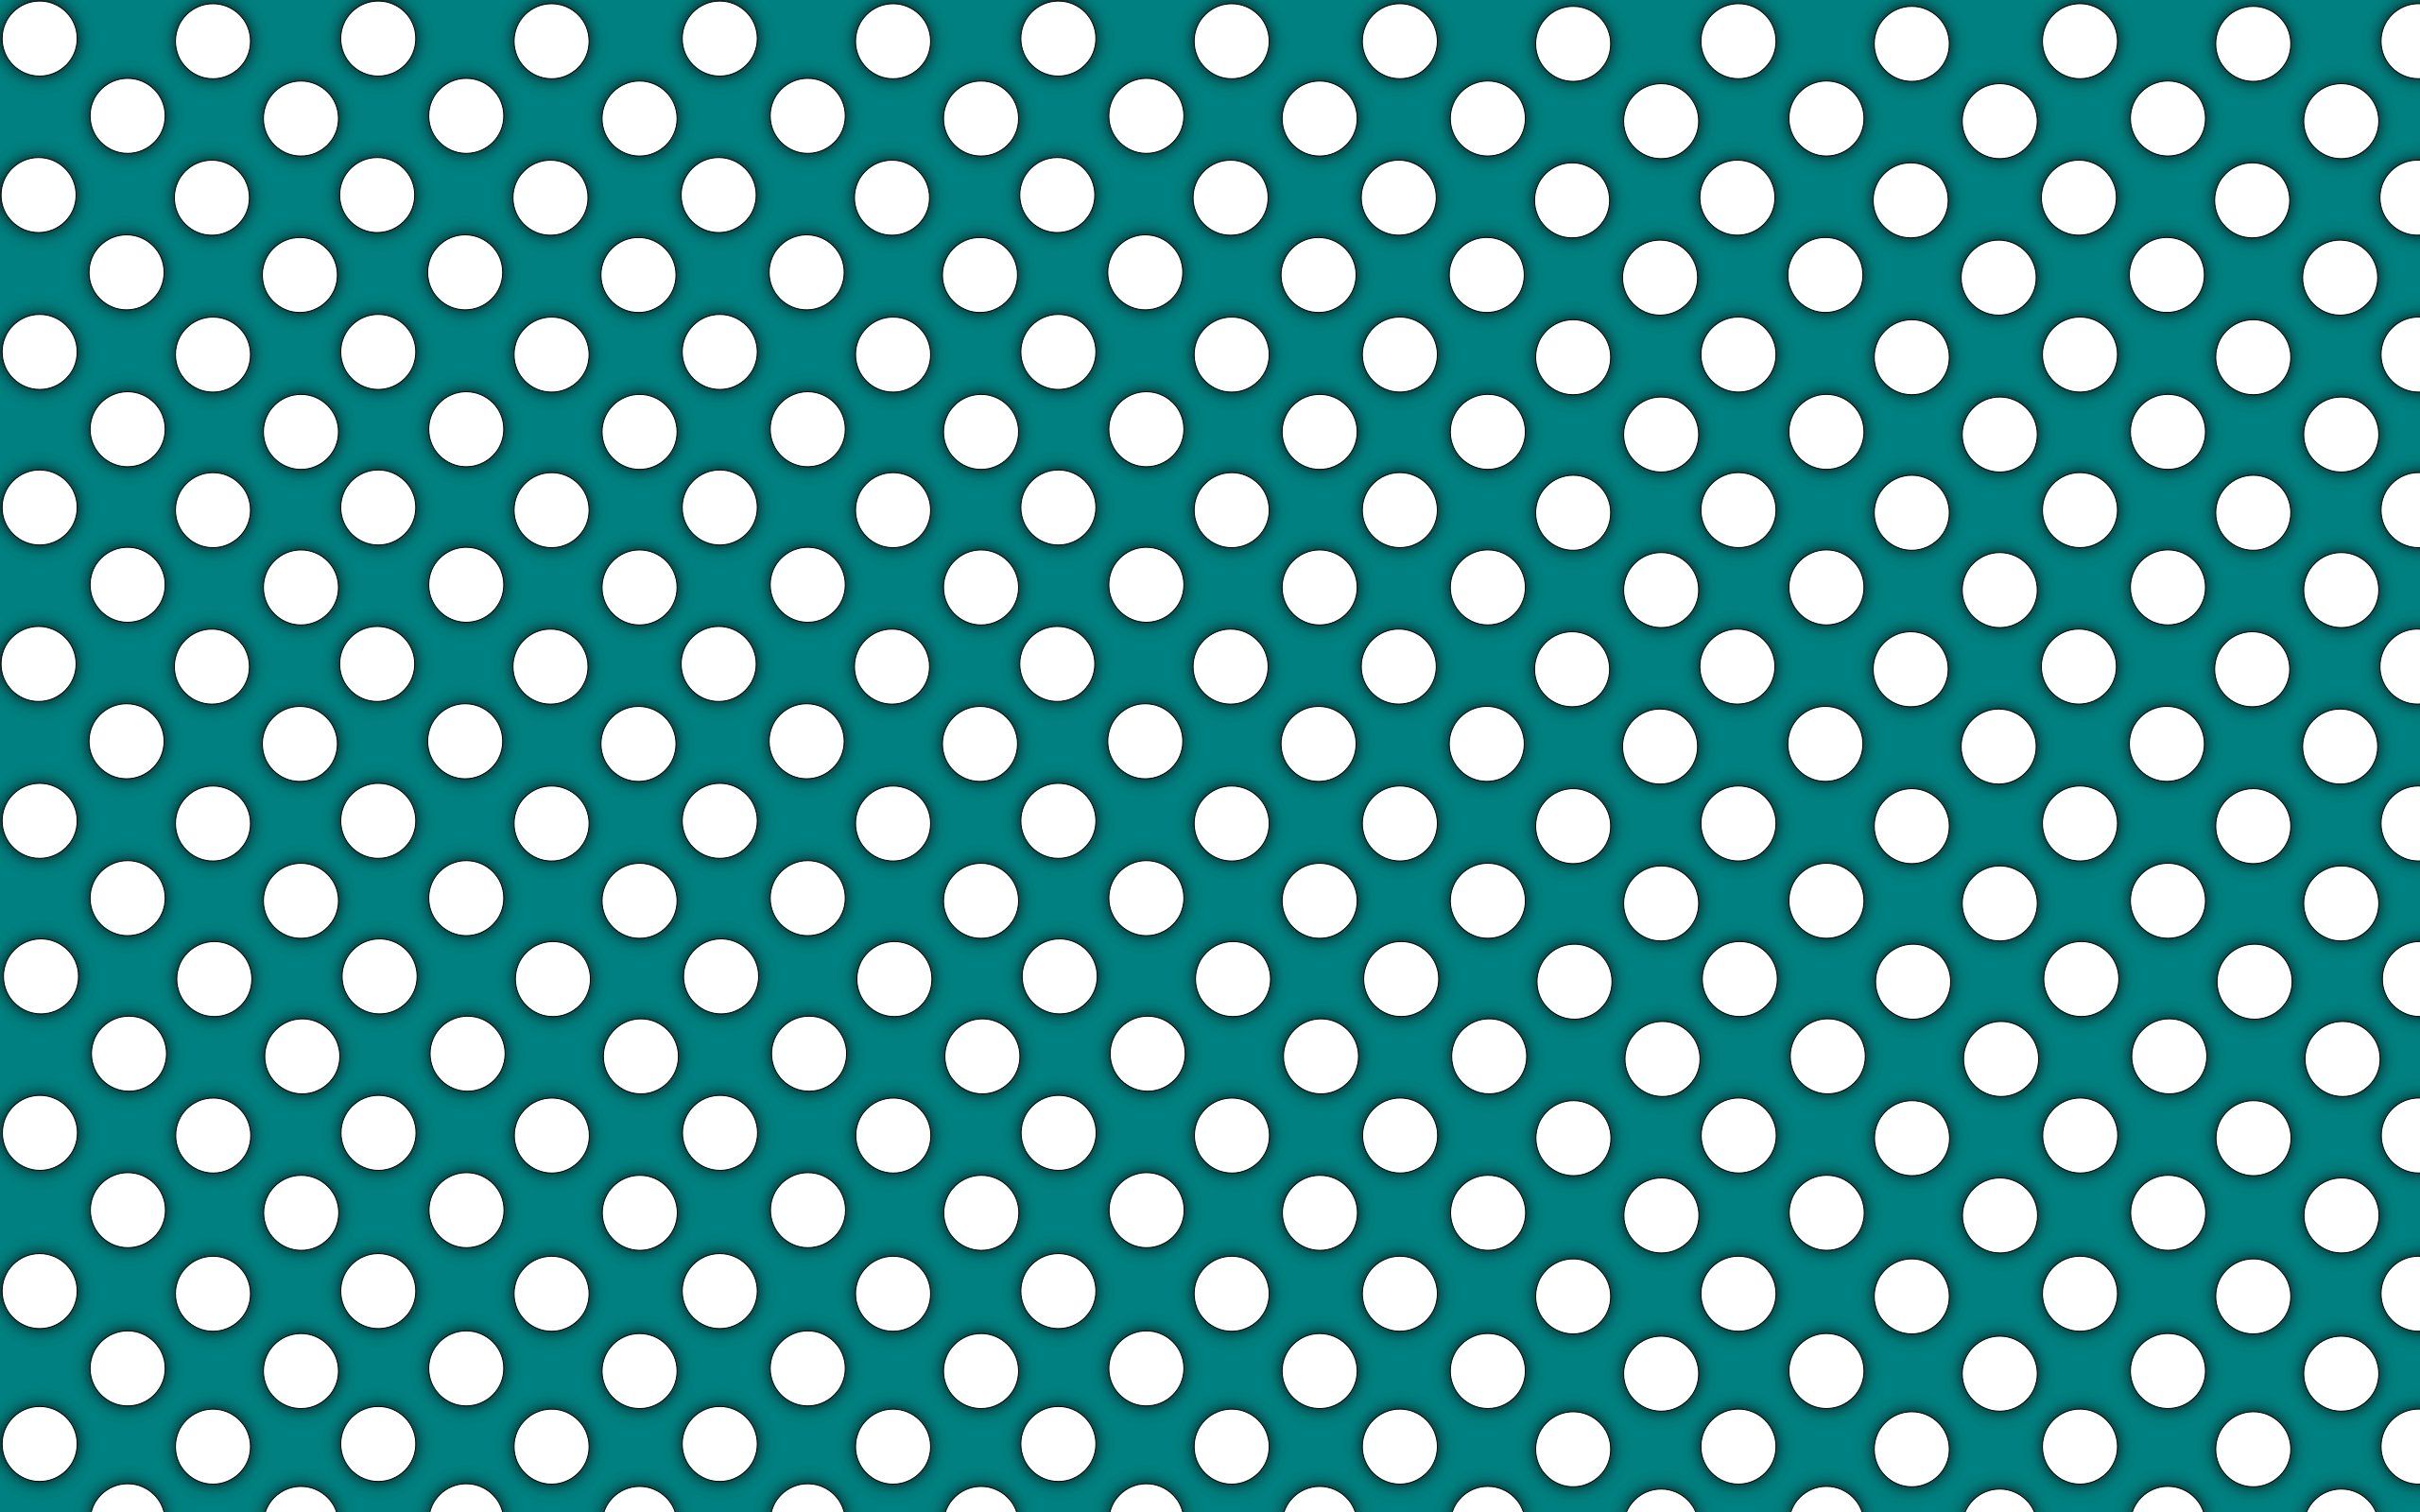 Polka Dot wallpaper | 2560x1600 | #39873